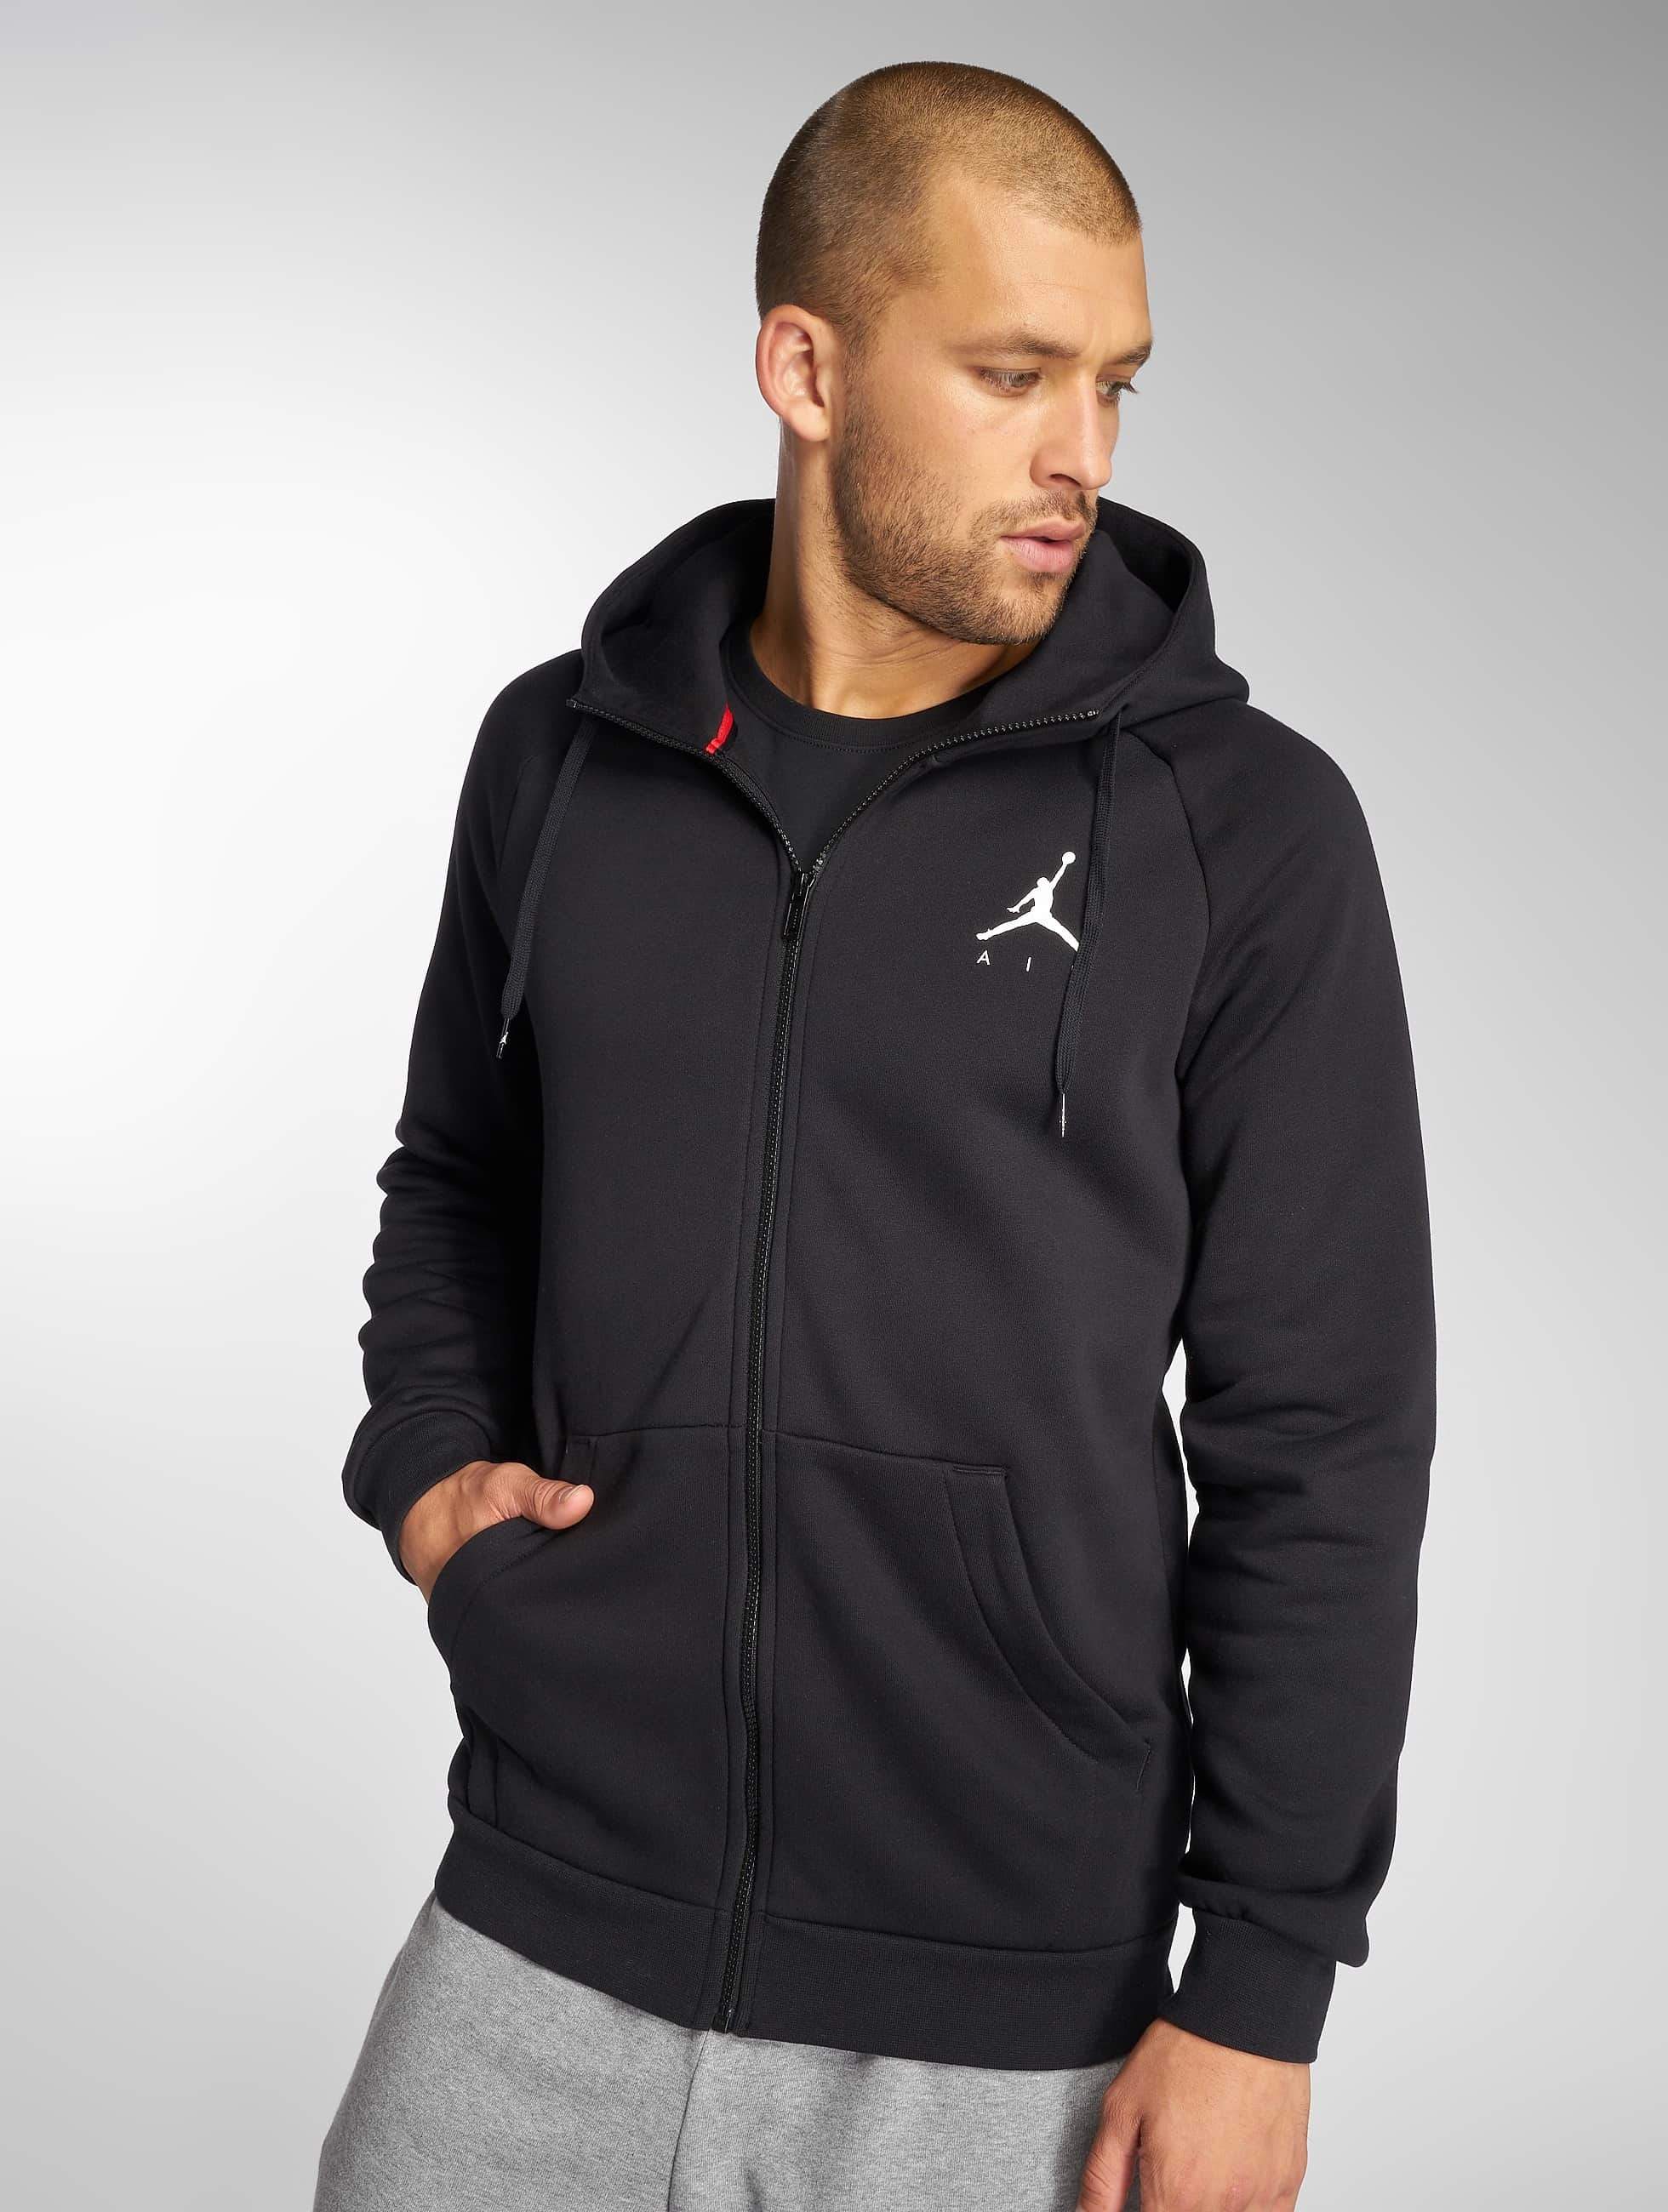 Jordan Männer Zip Hoodie Sportswear Jumpman Fleece in schwarz